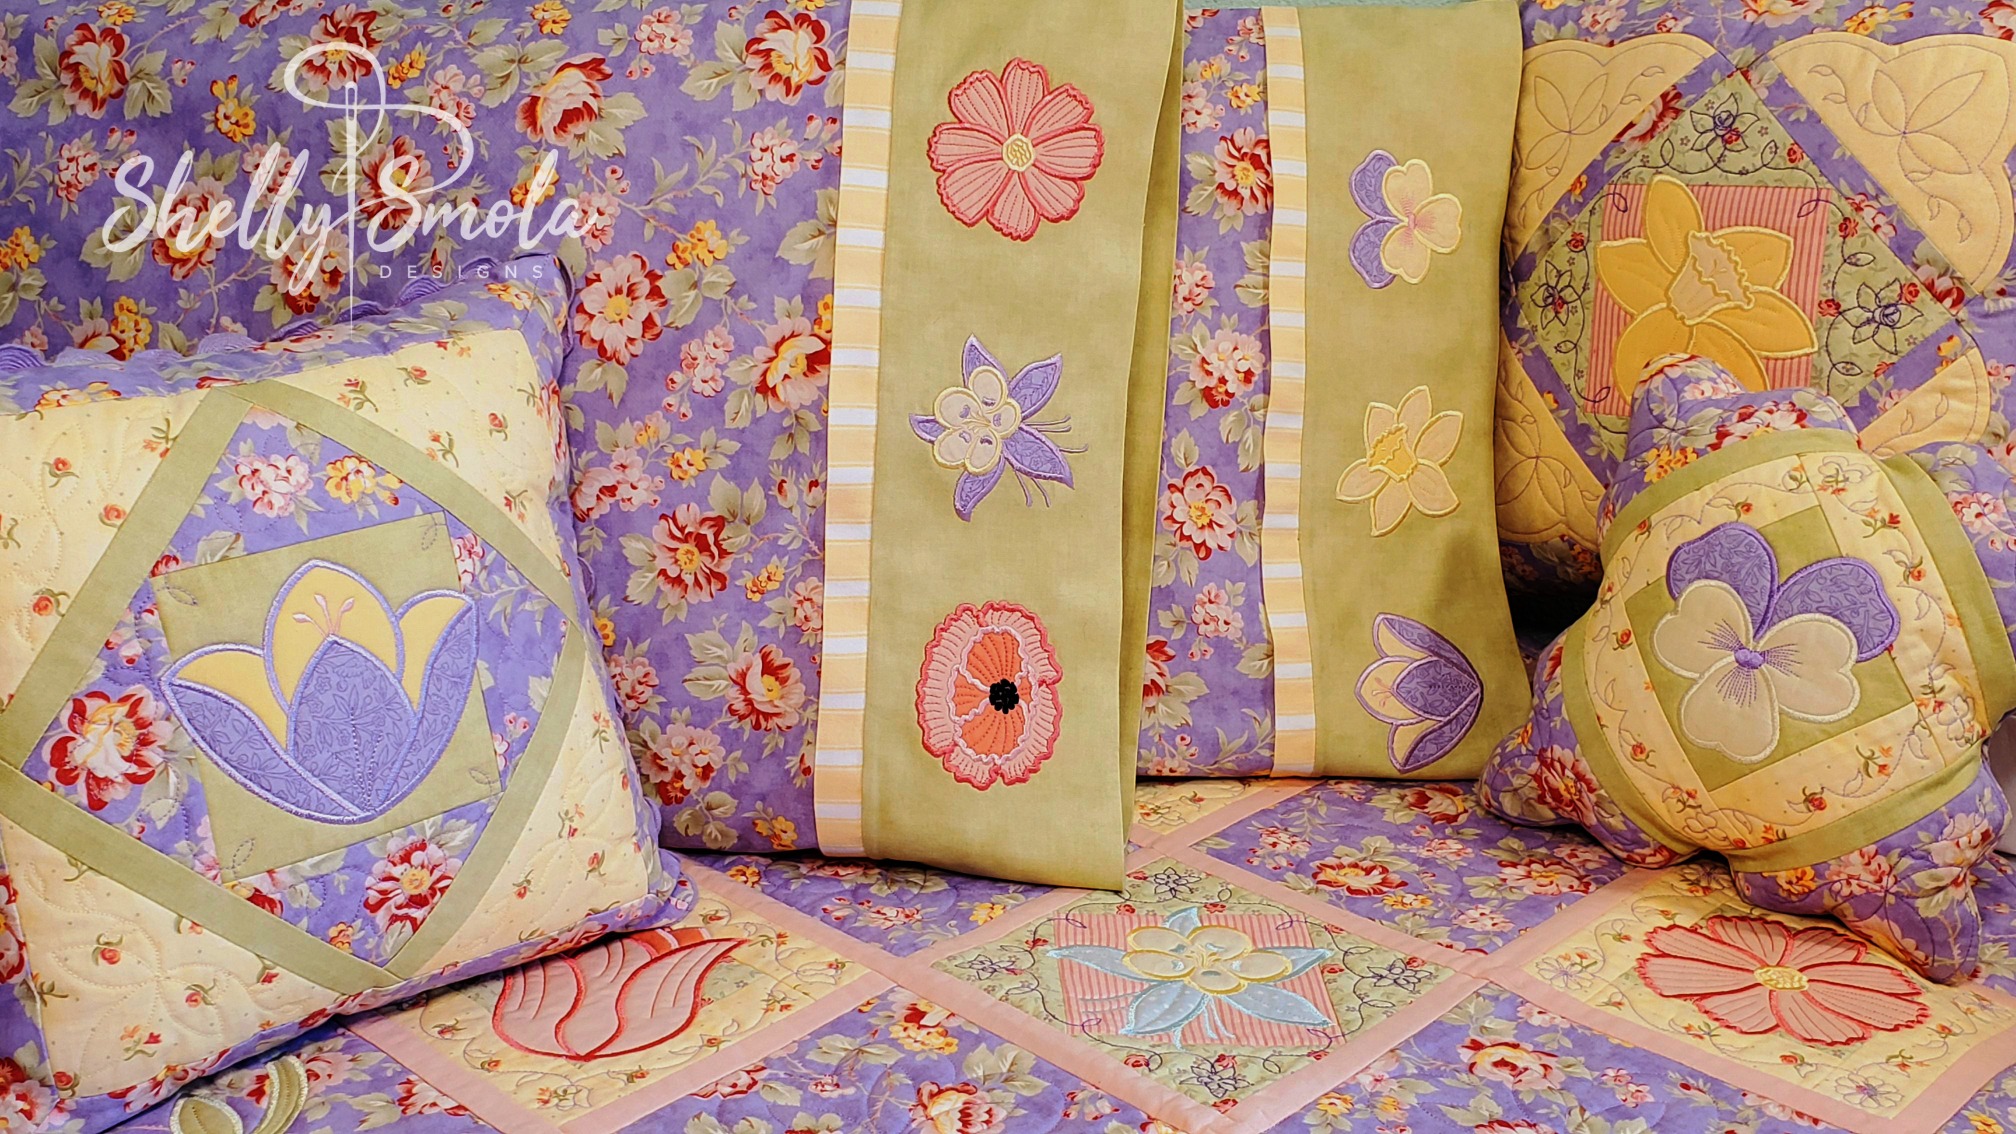 Flower Garden Applique Pillows by Shelly Smola